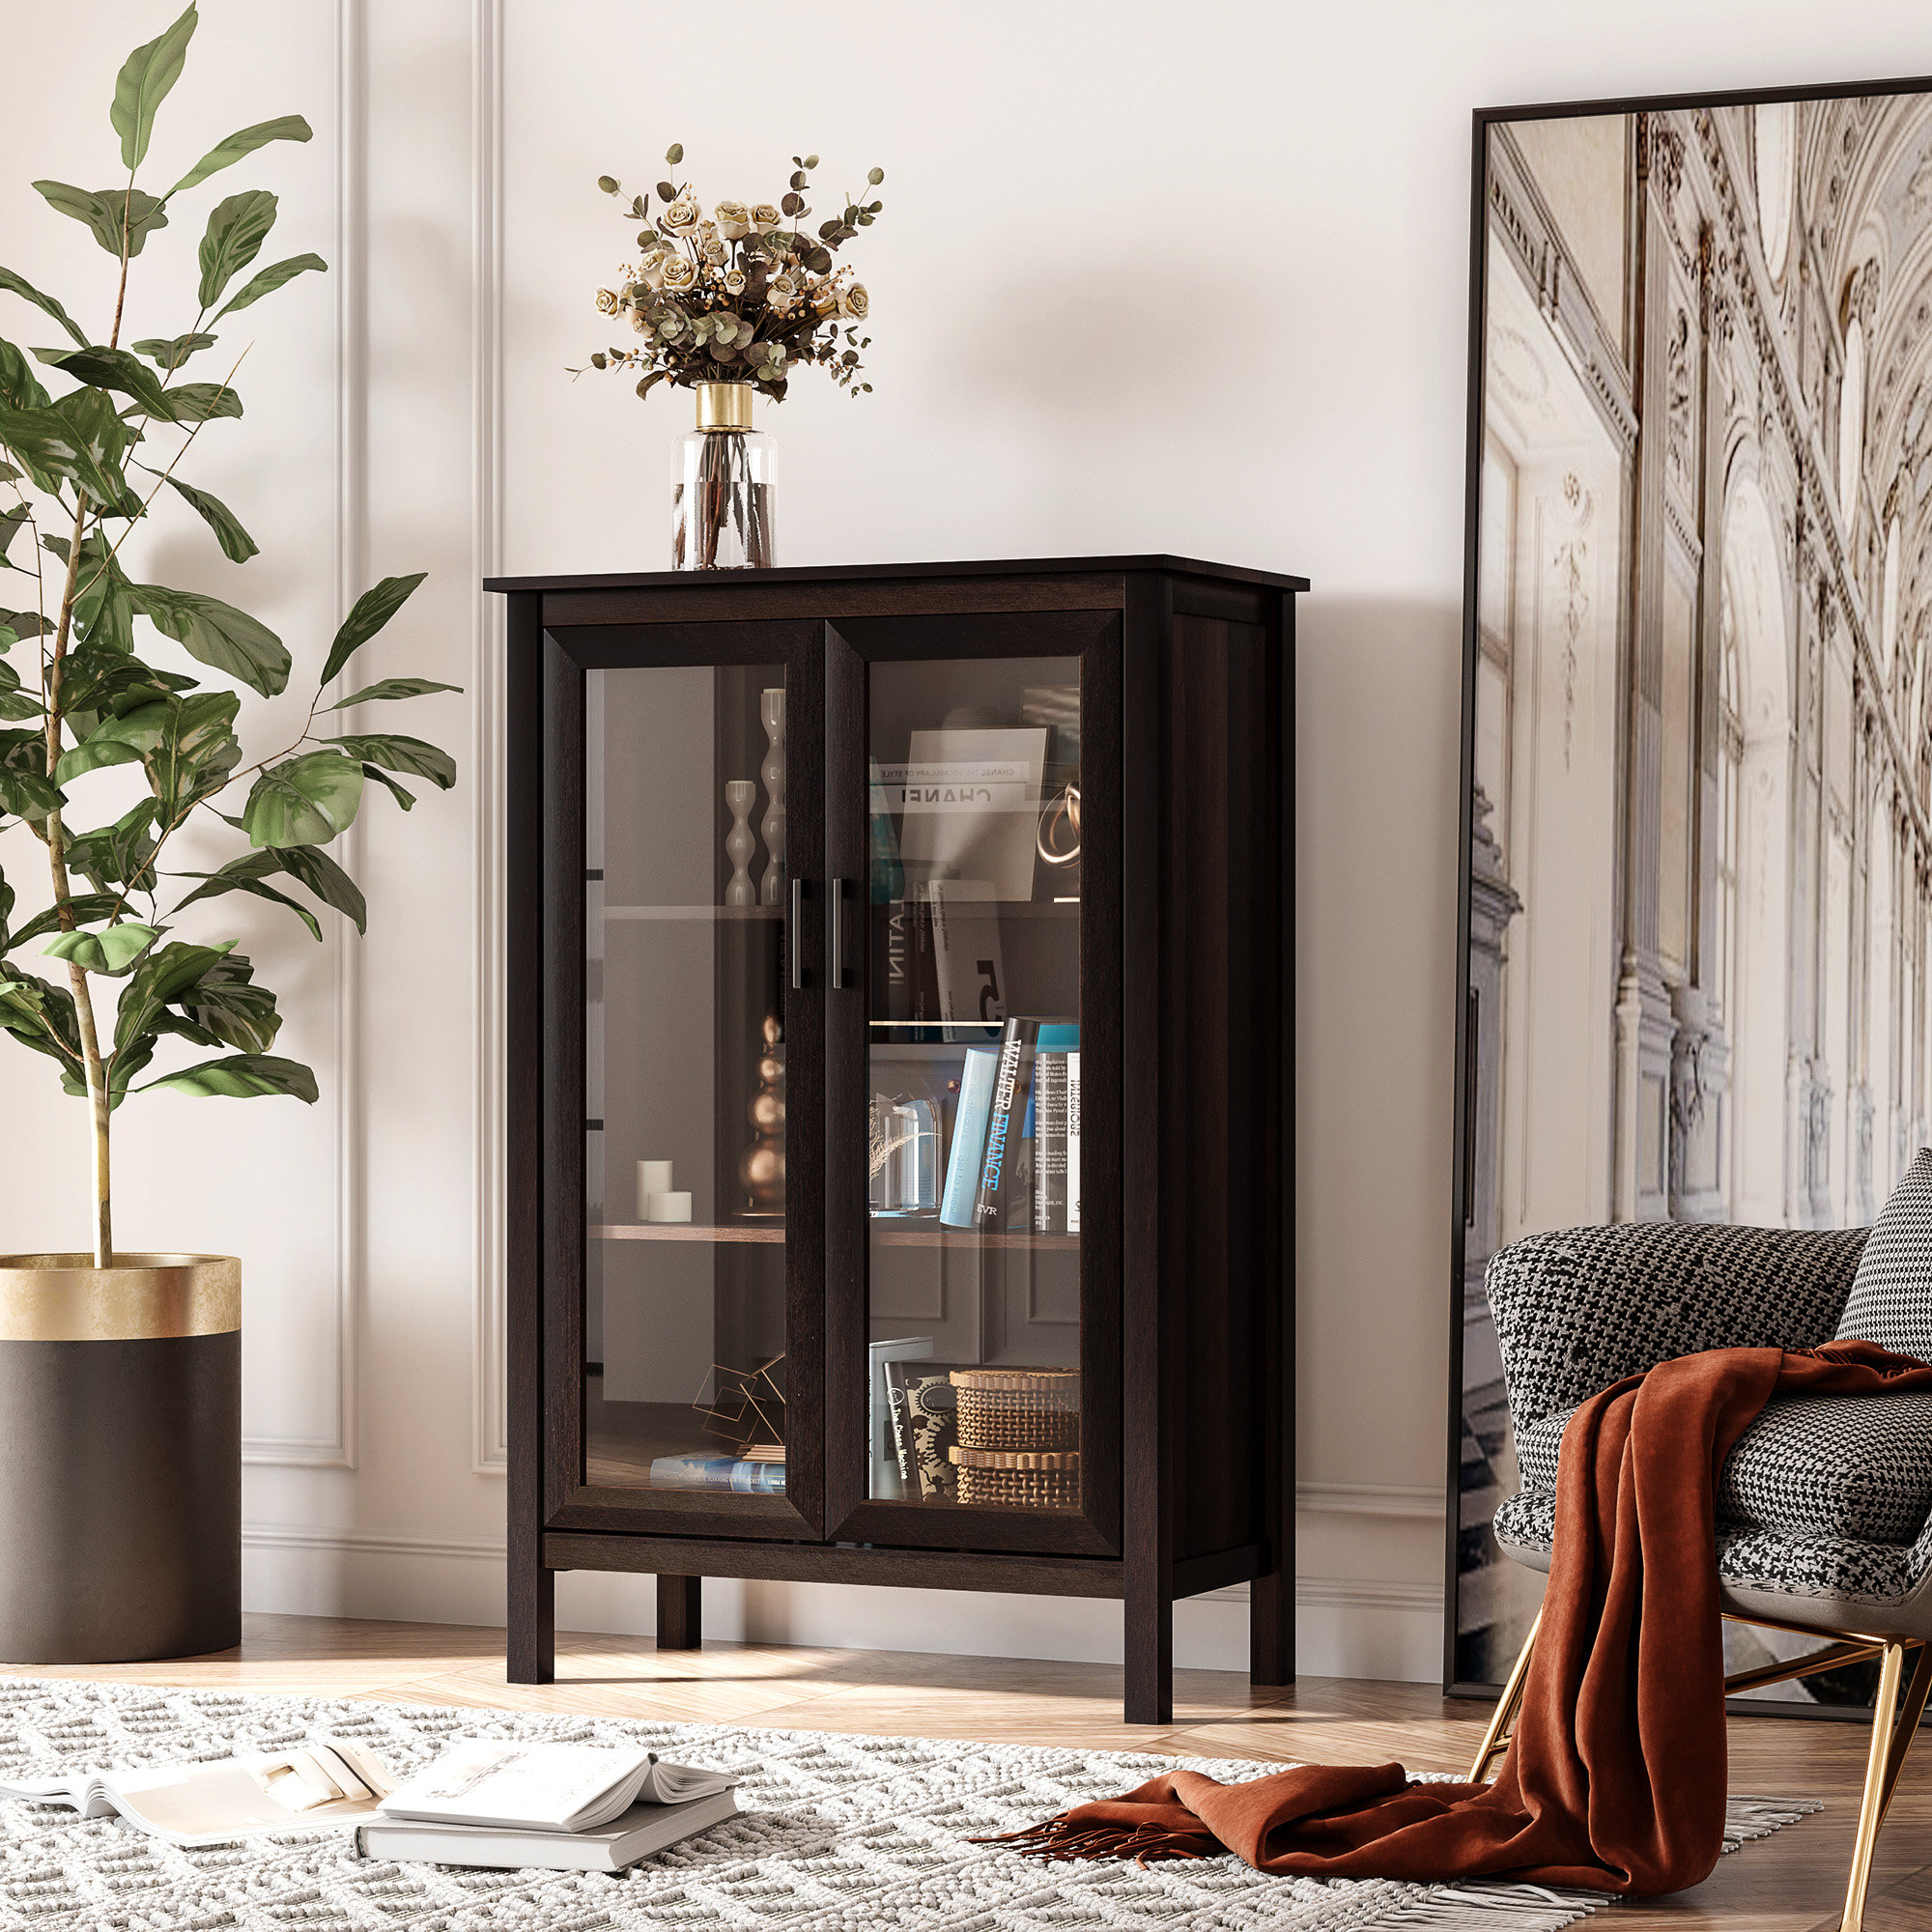 HEMNES Bedroom furniture, set of 4, black-brown, Queen - IKEA